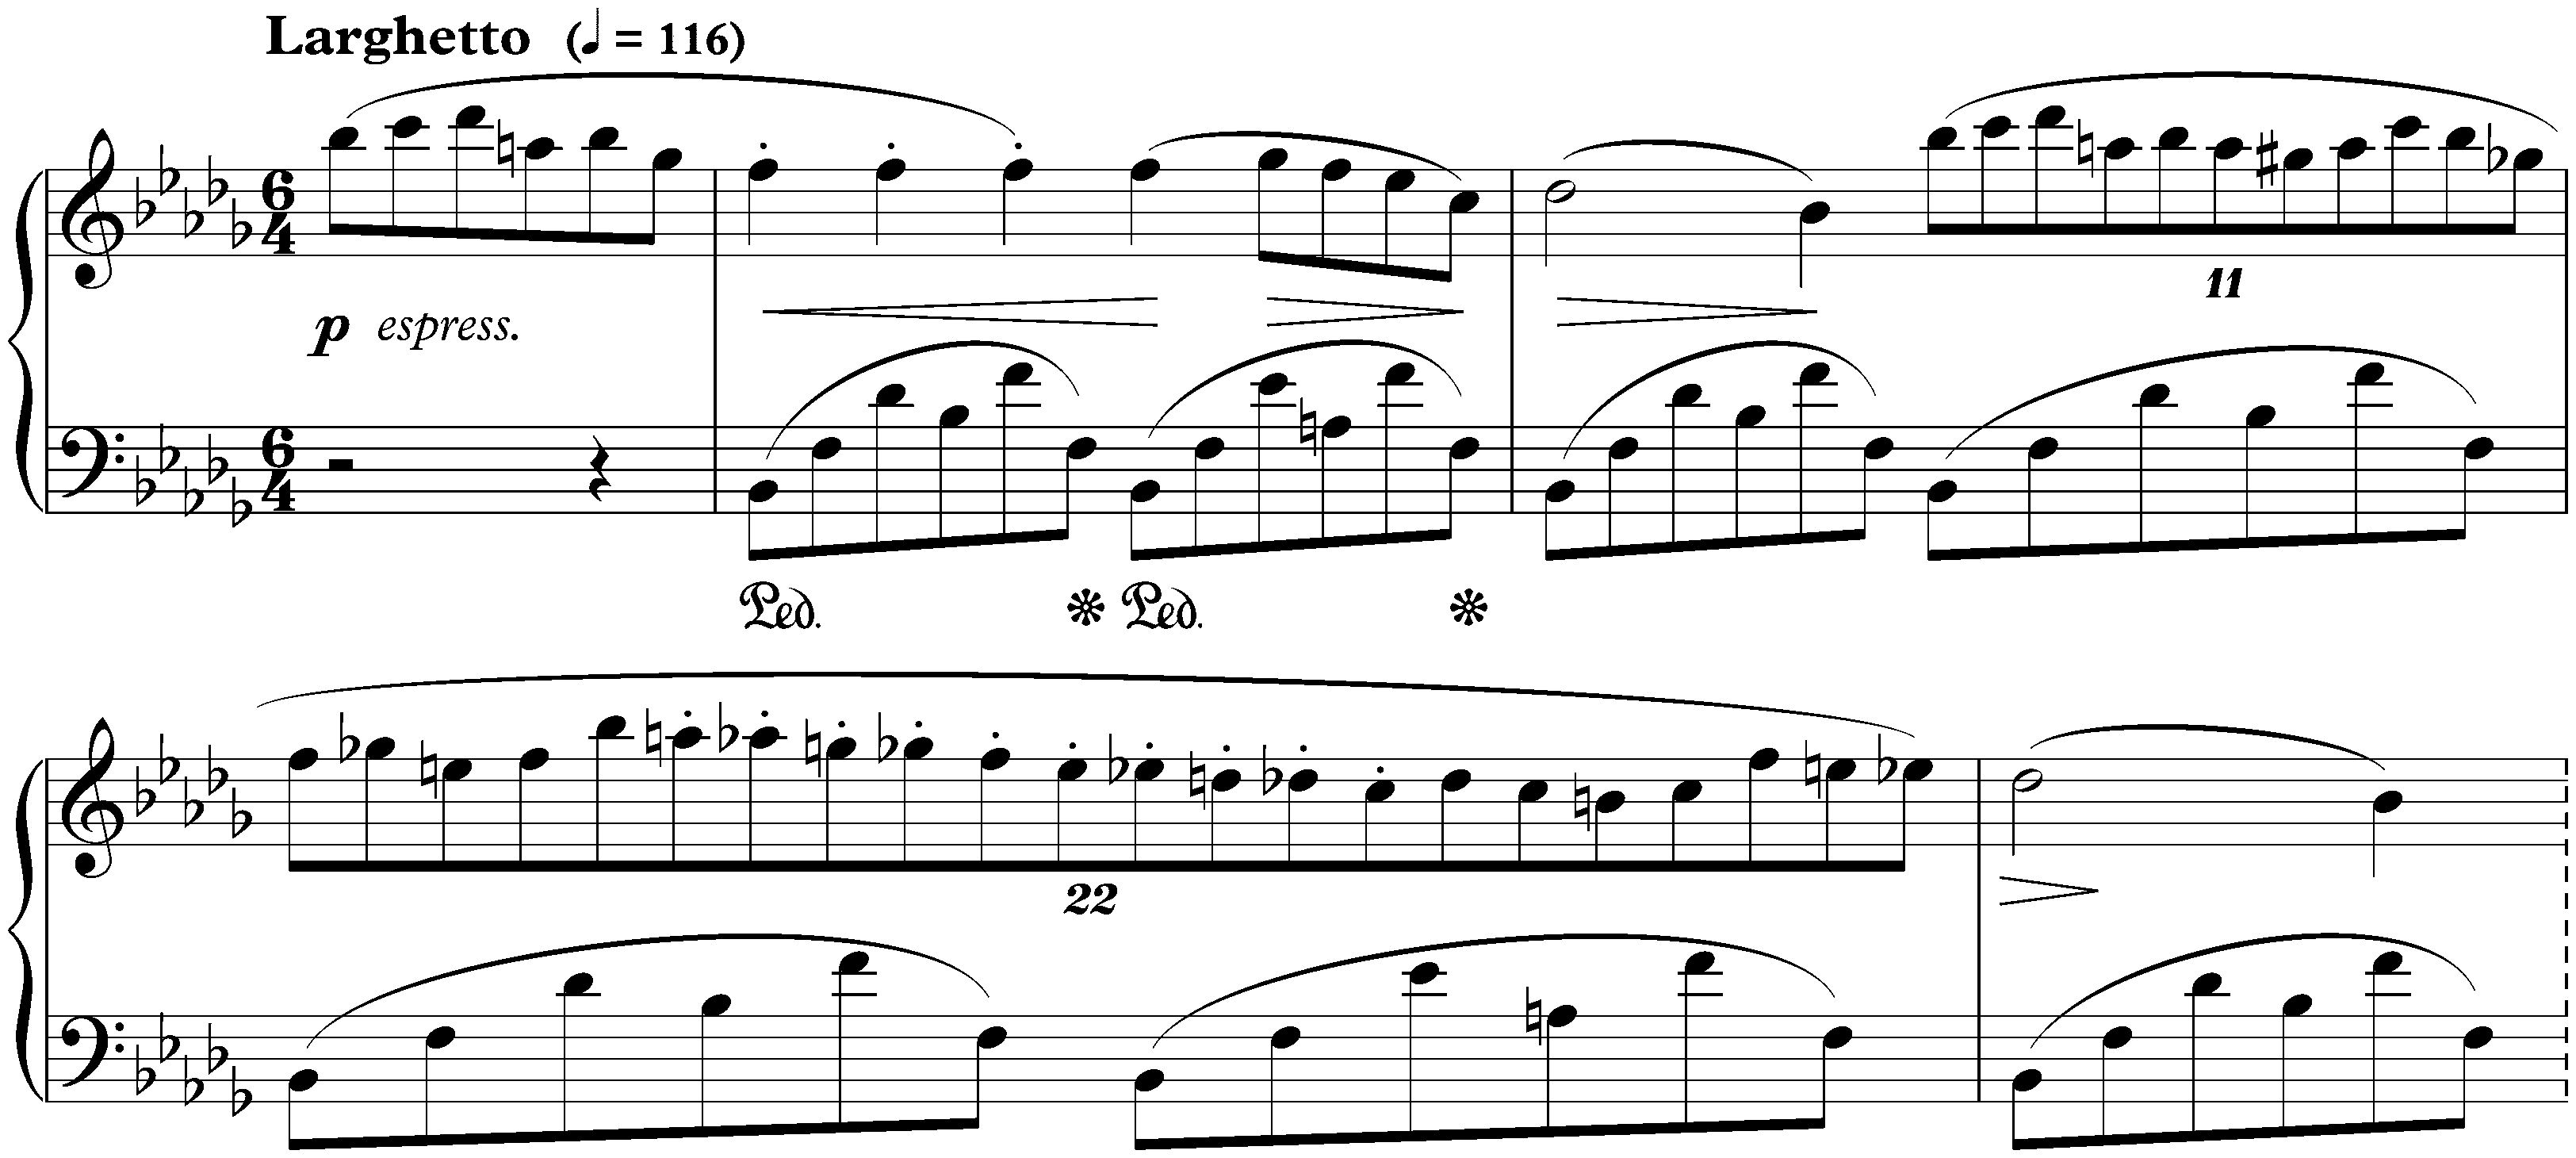 Three Nocturnes, op. 9; 1. B-flat minor